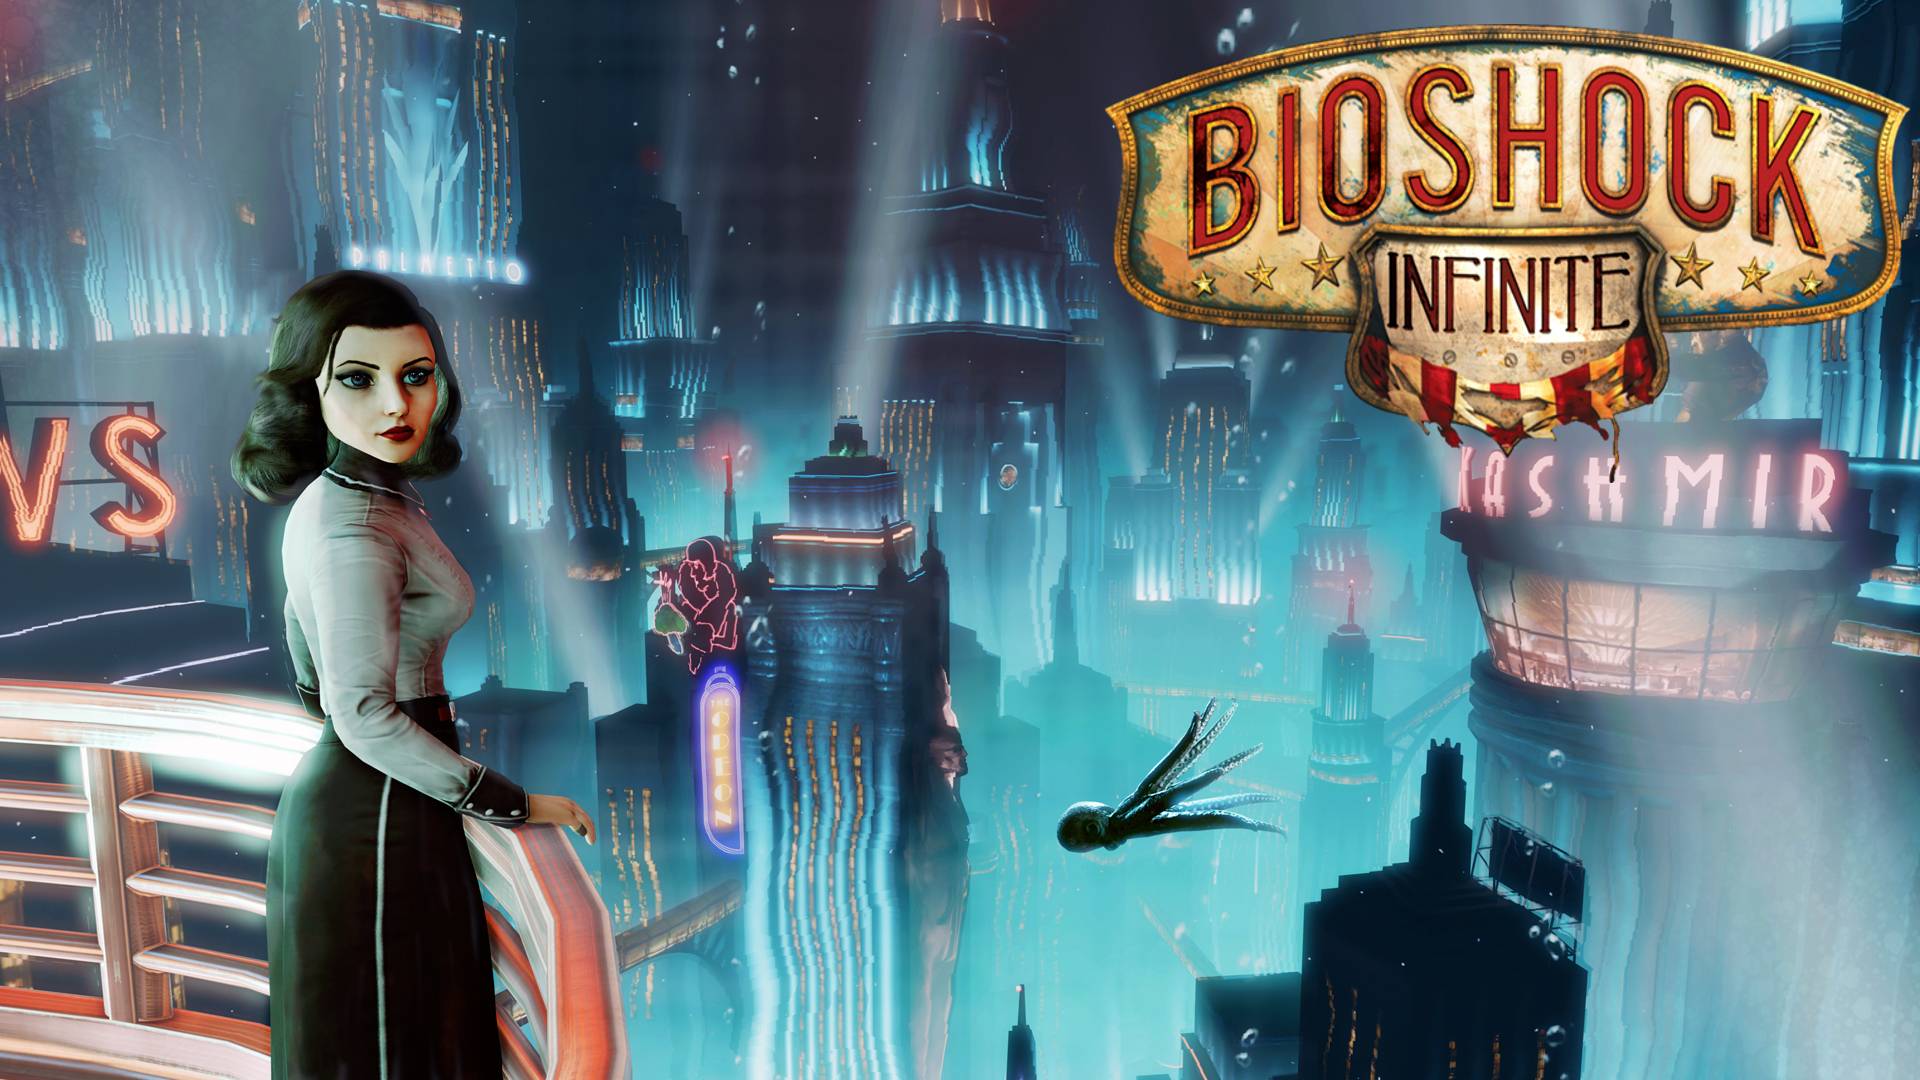 Bioshock Infinite Burial At Sea Wallpaper 1080p